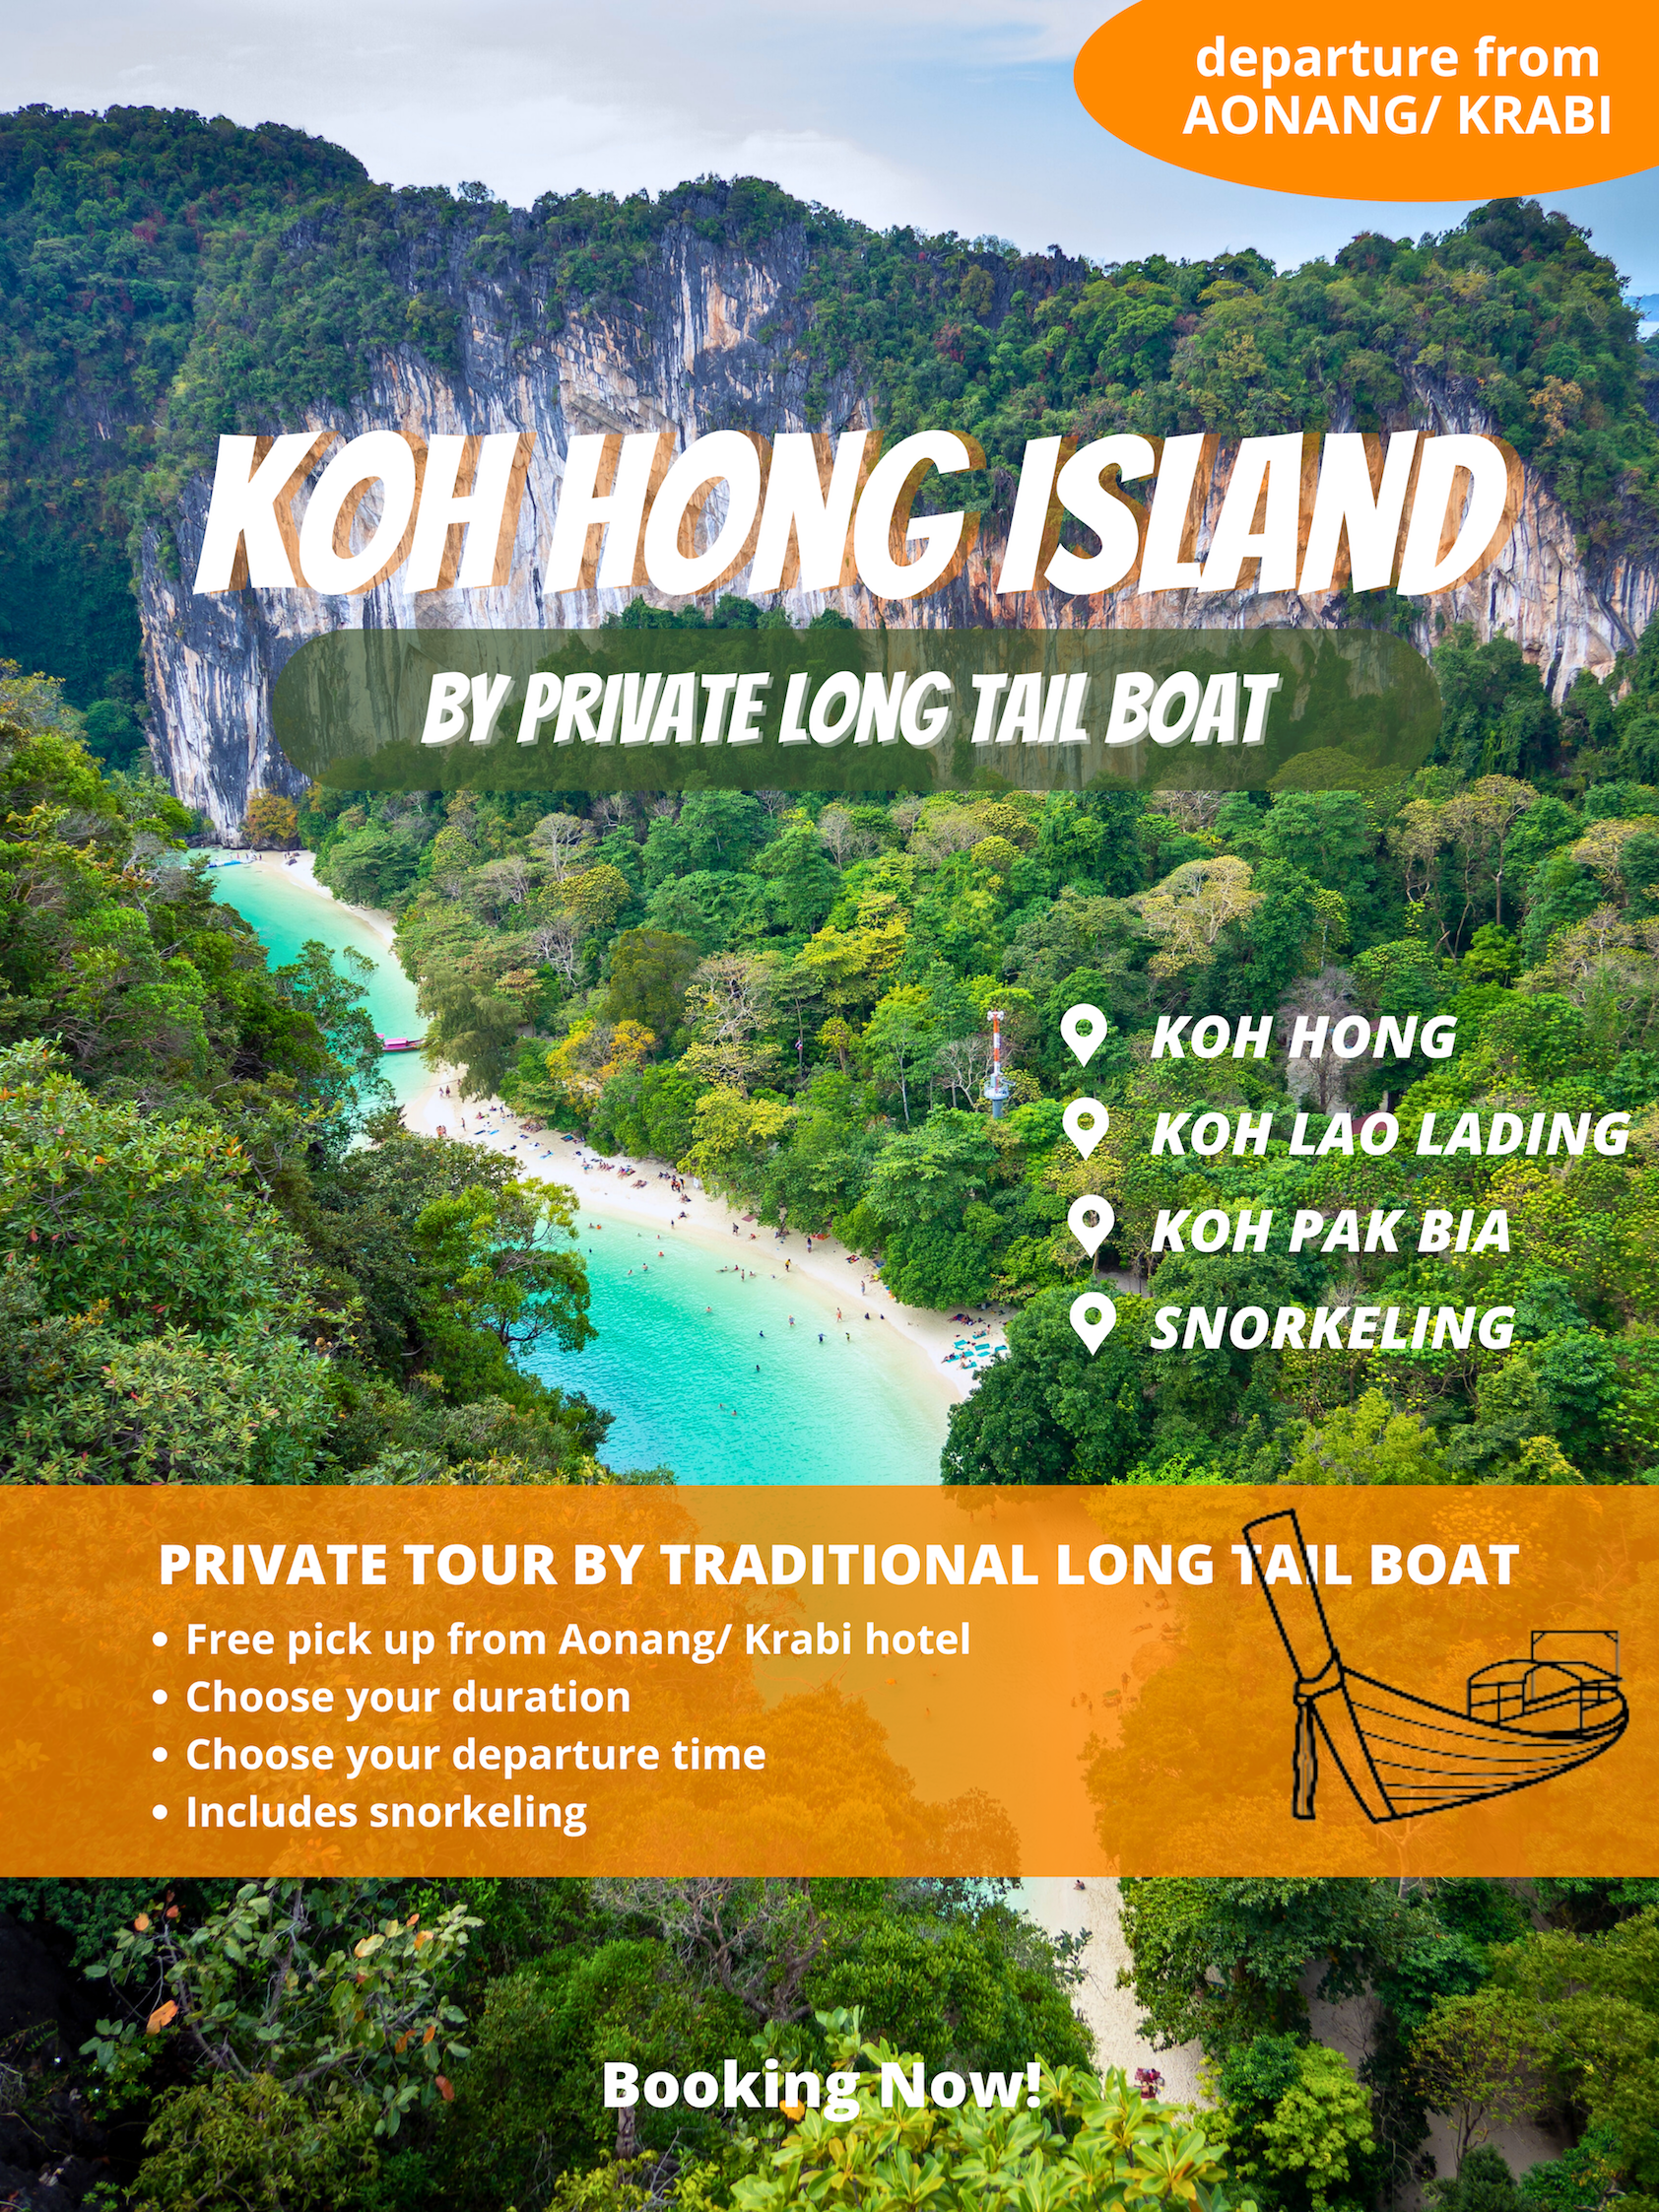 krabi-hong-island-private-long-tail-boat-trip